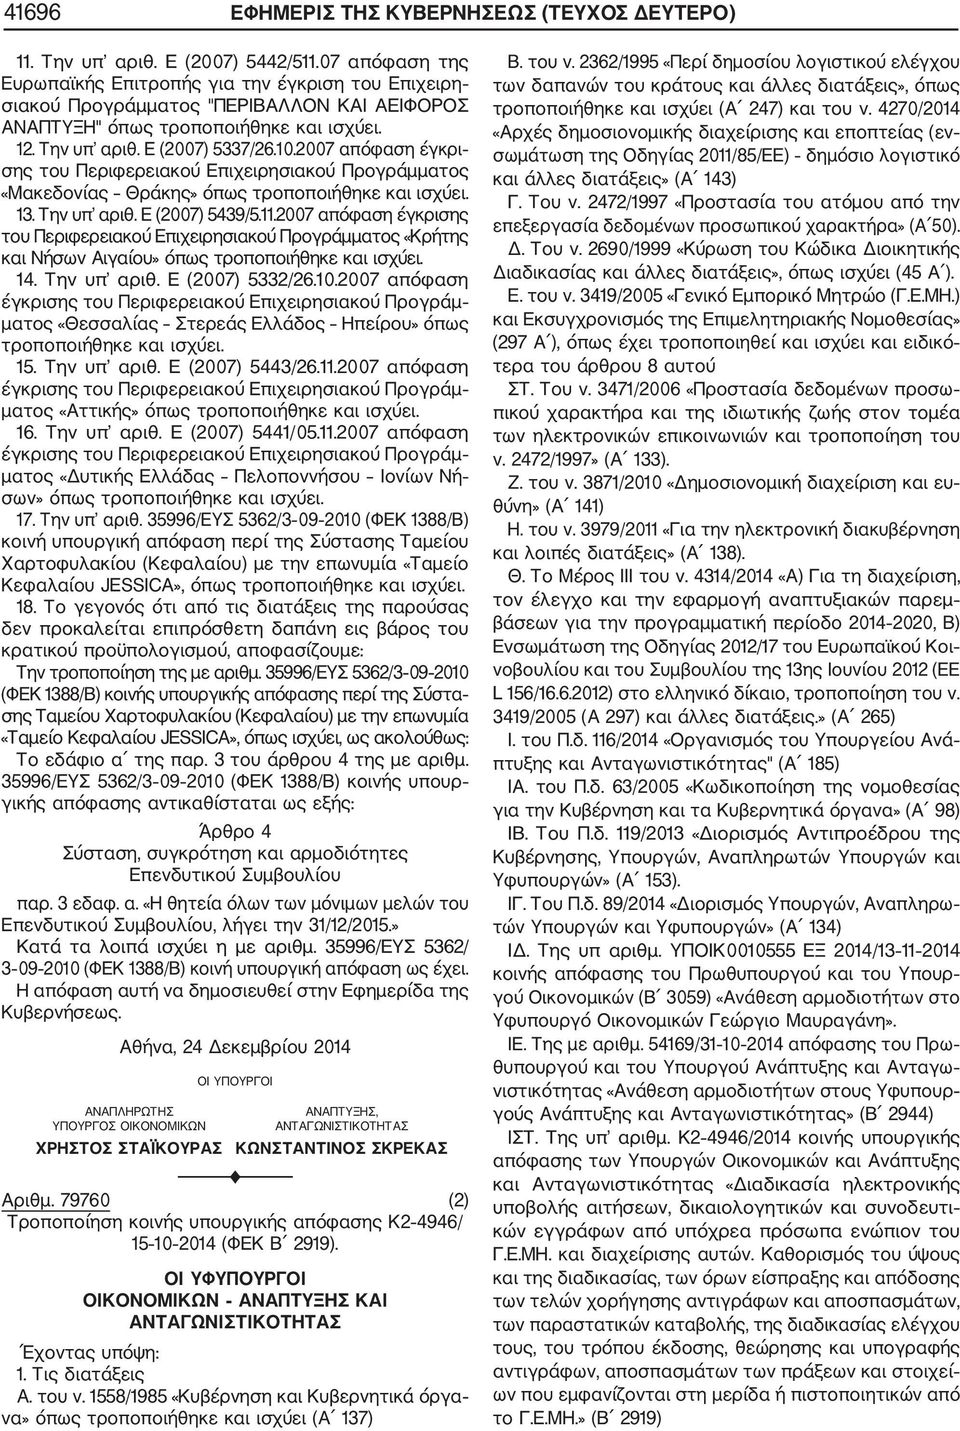 2007 απόφαση έγκρι σης του Περιφερειακού Επιχειρησιακού Προγράμματος «Μακεδονίας Θράκης» όπως τροποποιήθηκε και ισχύει. 13. Την υπ αριθ. Ε (2007) 5439/5.11.